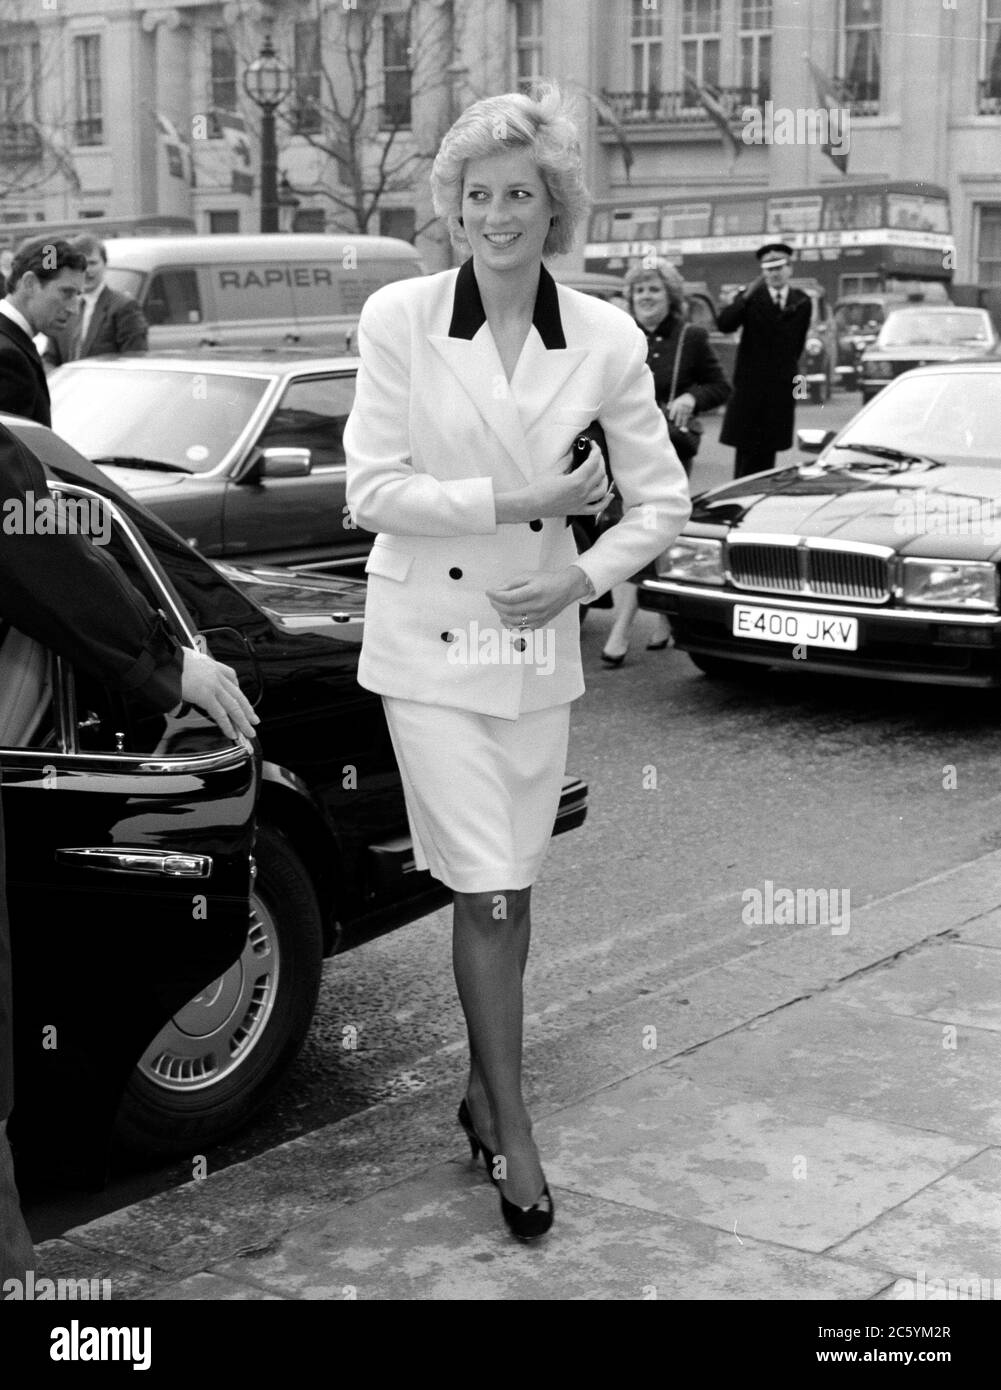 ARCHIV: LONDON, GROSSBRITANNIEN: C. 1989: S.H. Diana, Prinzessin von Wales. Datei Foto © Paul Smith/Featureflash Stockfoto